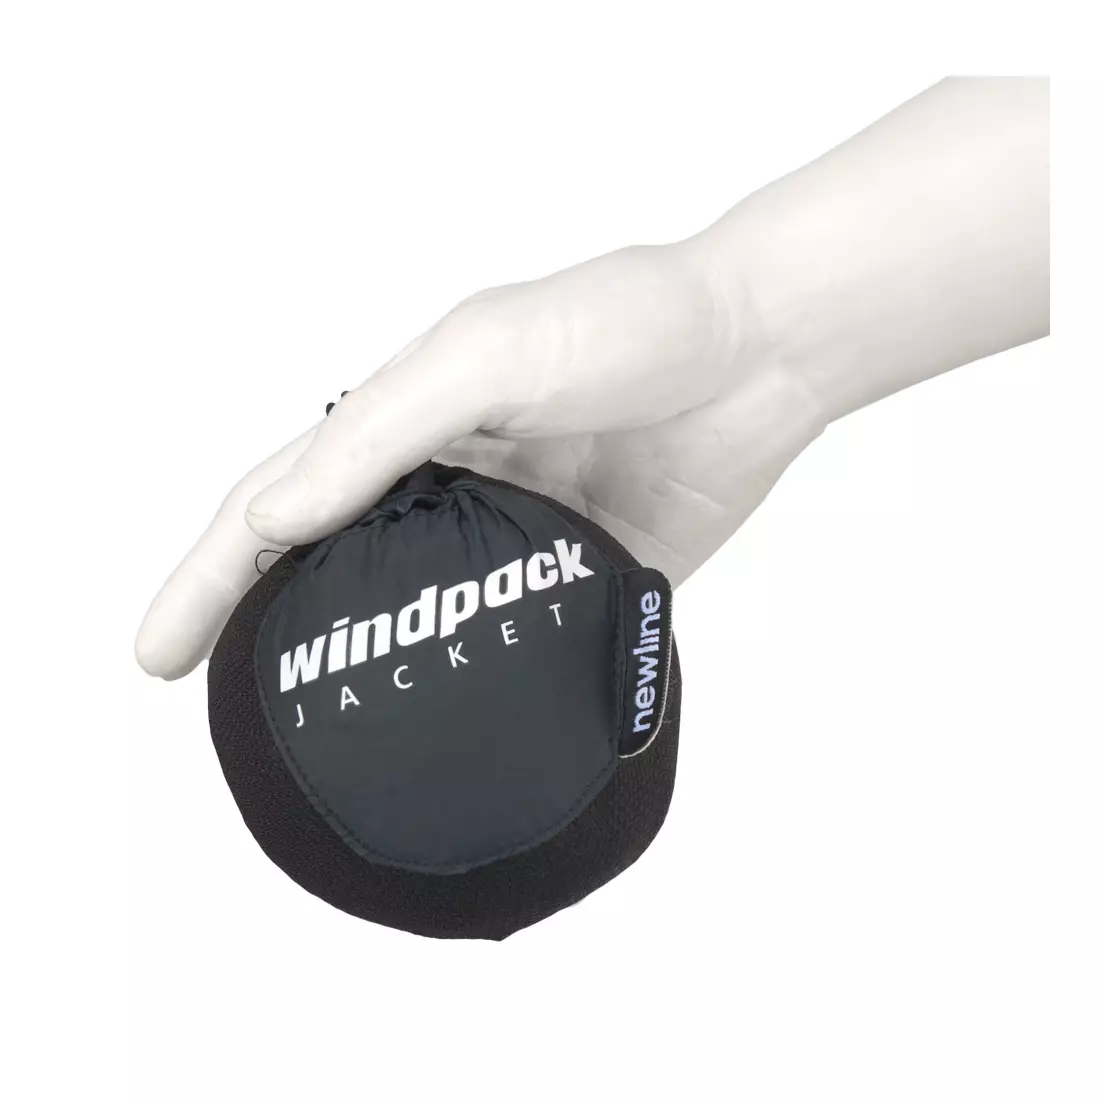 NEWLINE WINDPACK JACKET - ultraľahká športová vetrovka 14176-060, farba: čierna